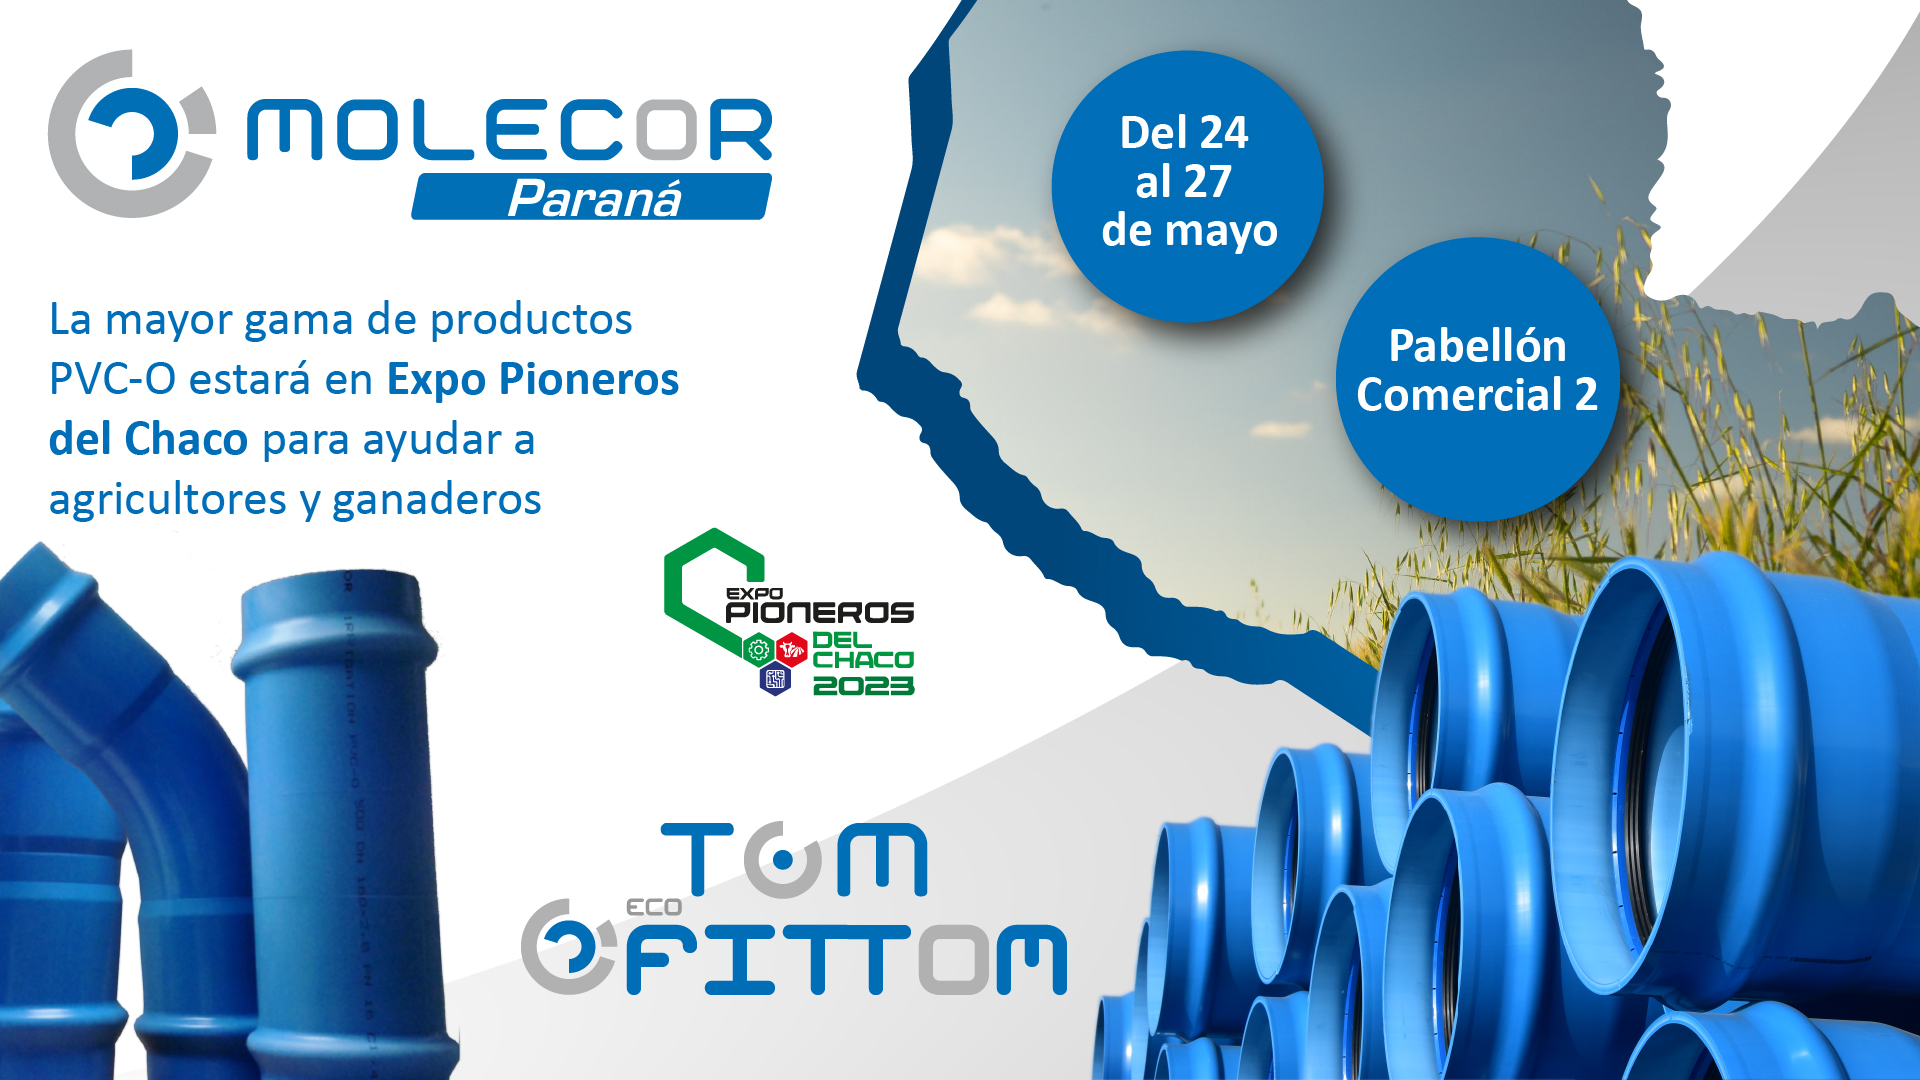 Molecor Paraná en Expo Pioneros del Chaco